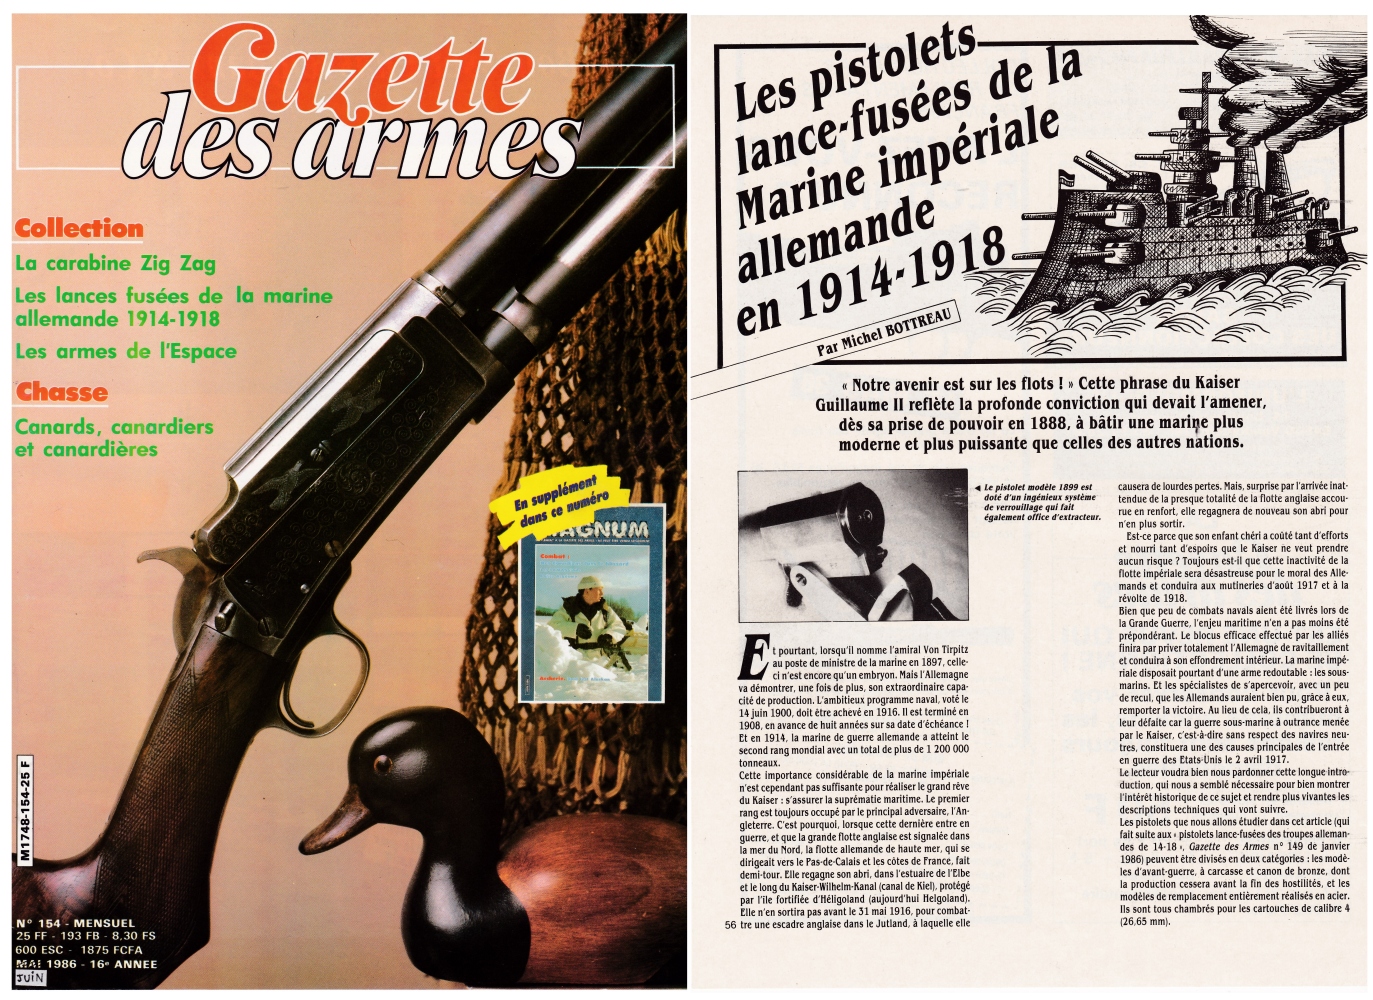 Les pistolets lance-fusées de la marine impériale allemande de 14-18 ont fait l'objet d'une publication sur 6 pages dans le magazine Gazette des Armes n°154 (mai 1986).